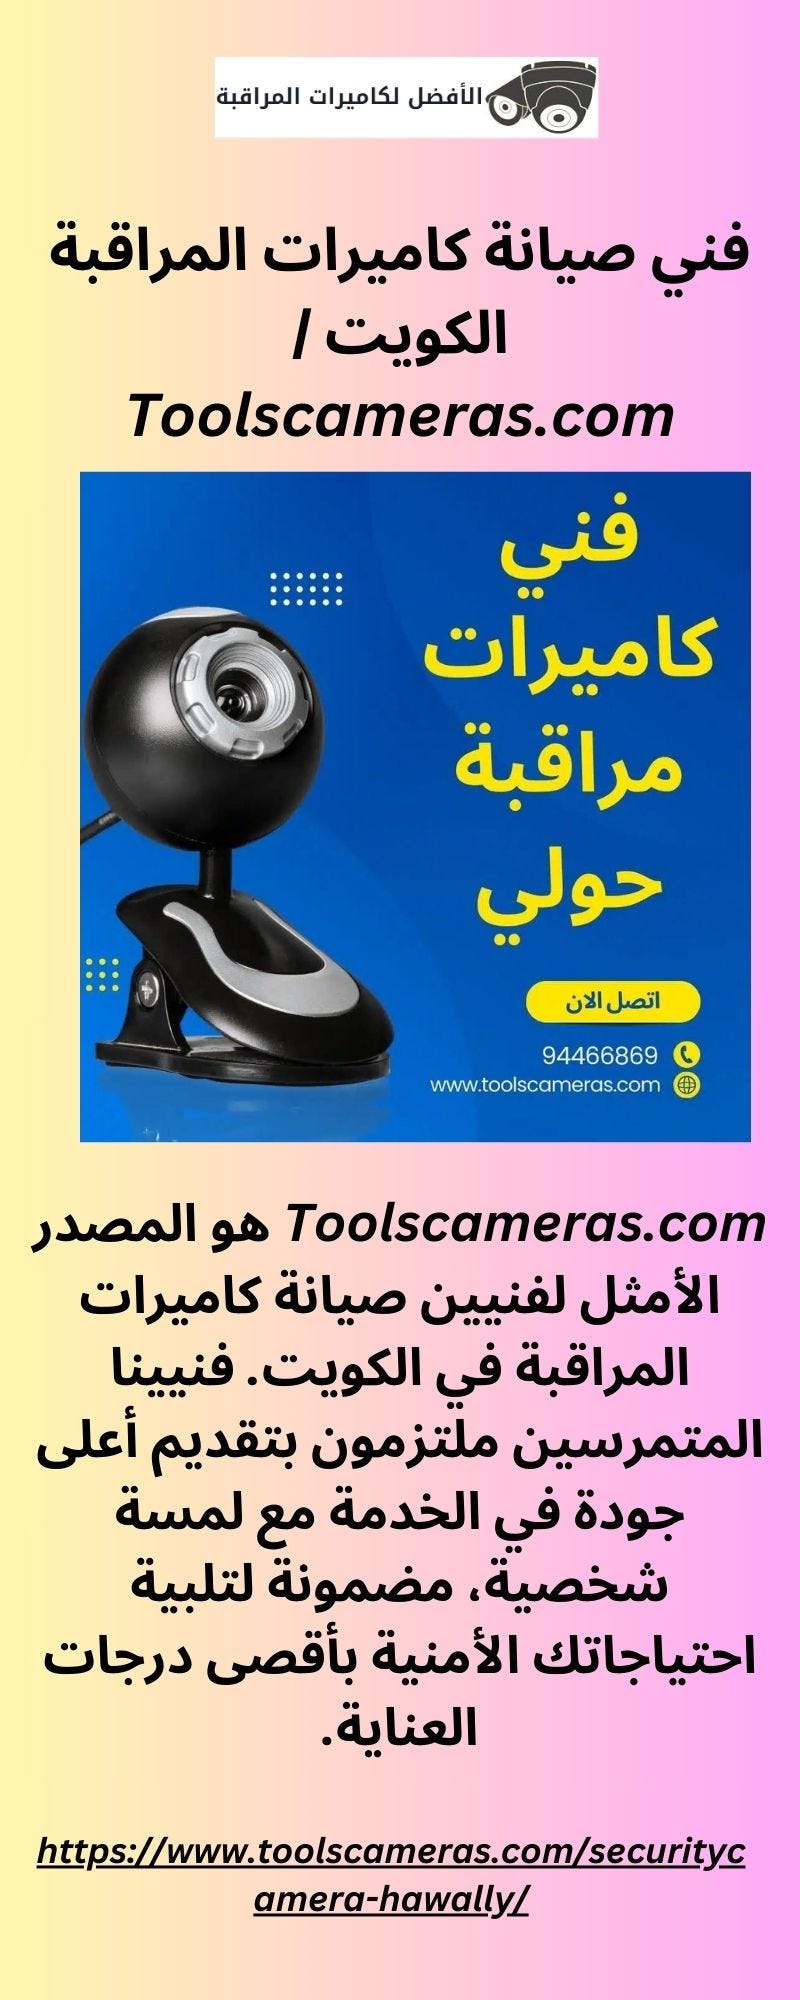 فني صيانة كاميرات المراقبة الكويت | Toolscameras.com - Tools Cameras -  Medium